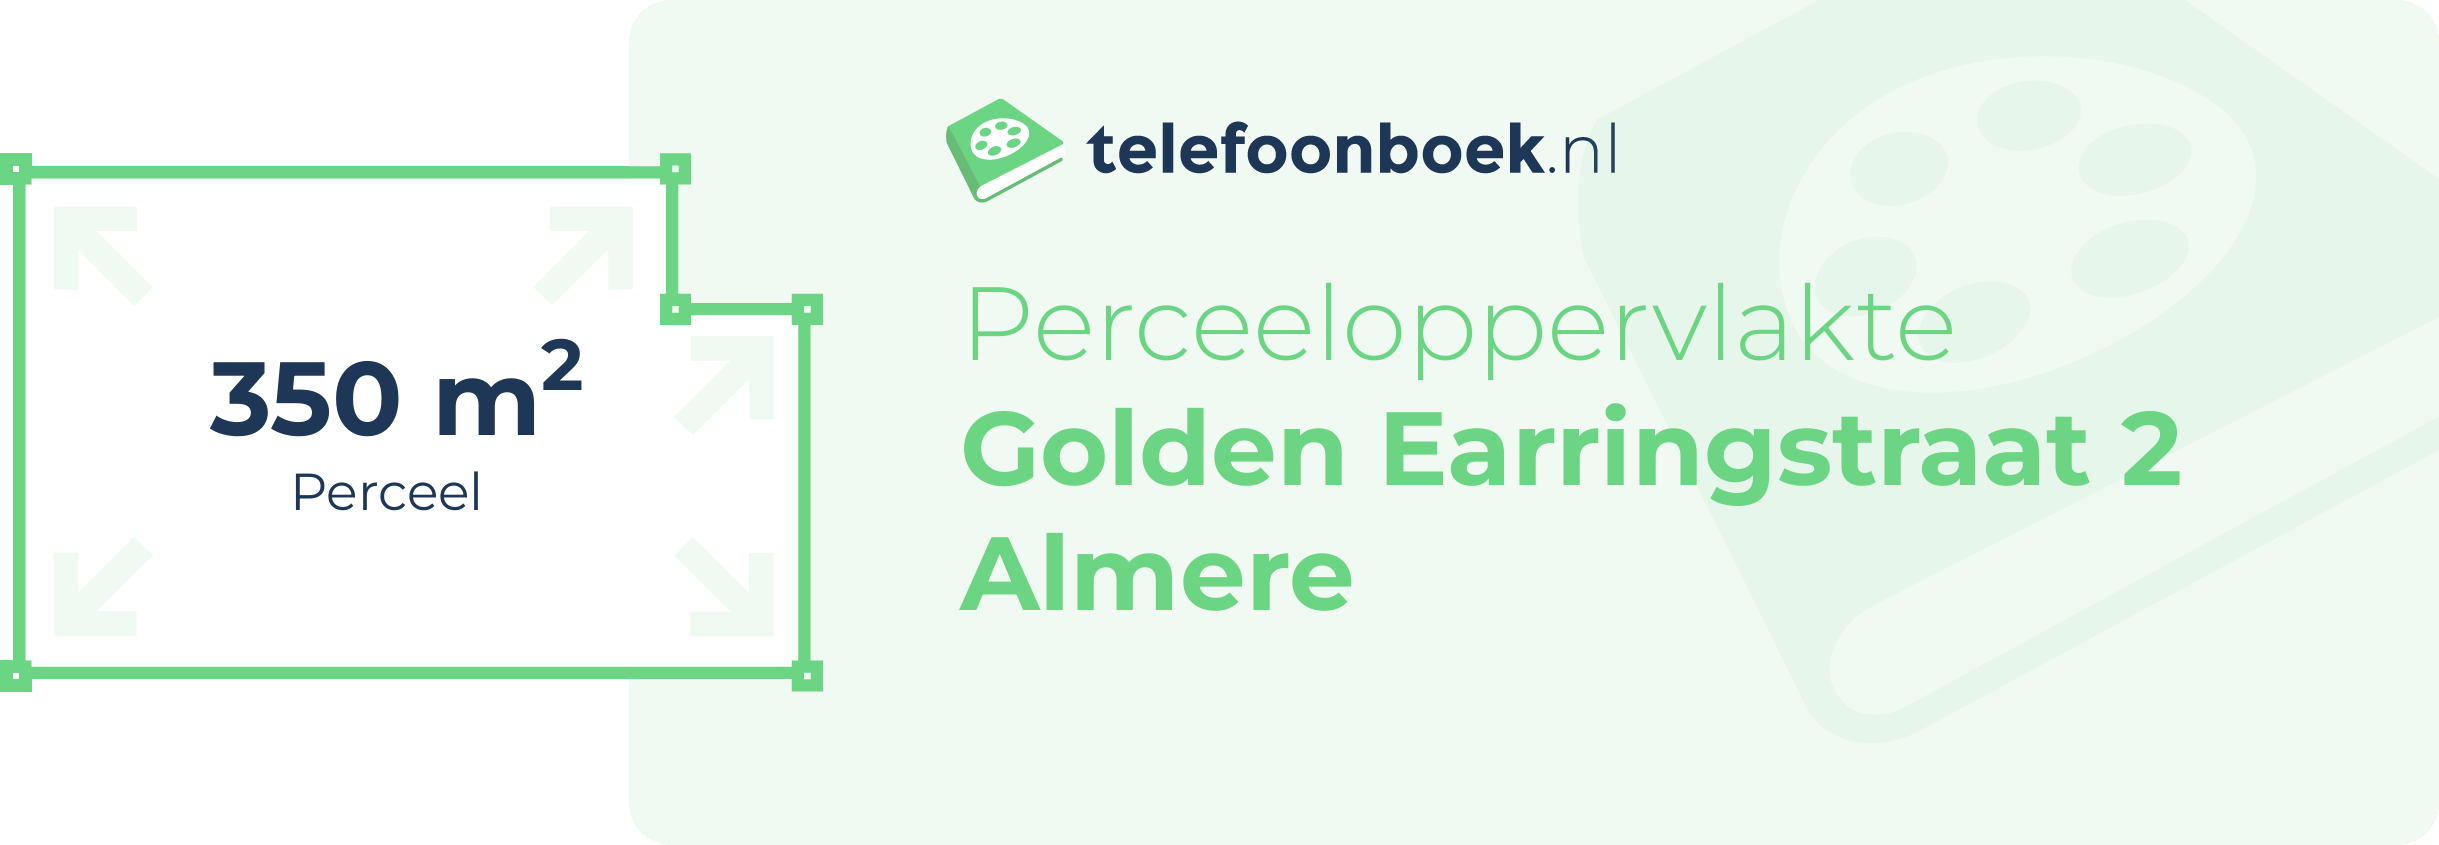 Perceeloppervlakte Golden Earringstraat 2 Almere